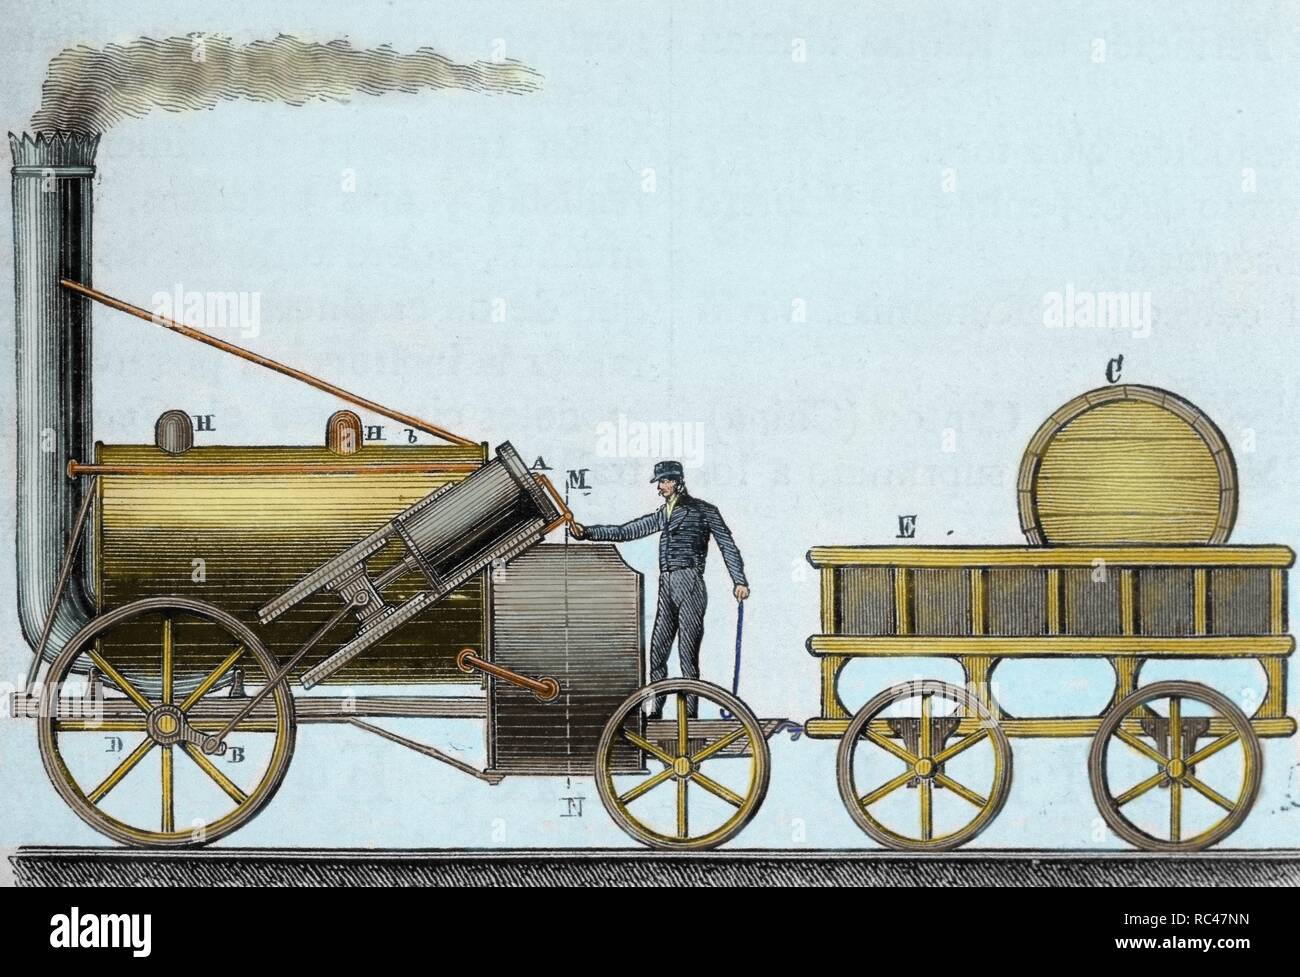 Die Rakete. Lok, die von britischer Ingenieur und Erfinder George Stephenson (1781-1848). Es war die Erste, die unterwegs war, mit der Fluggäste zwischen Liverpool und Manchester (1830), bei einer durchschnittlichen Geschwindigkeit von 30 km/h. 19.-Jahrhundert Gravur. Gefärbt. Stockfoto